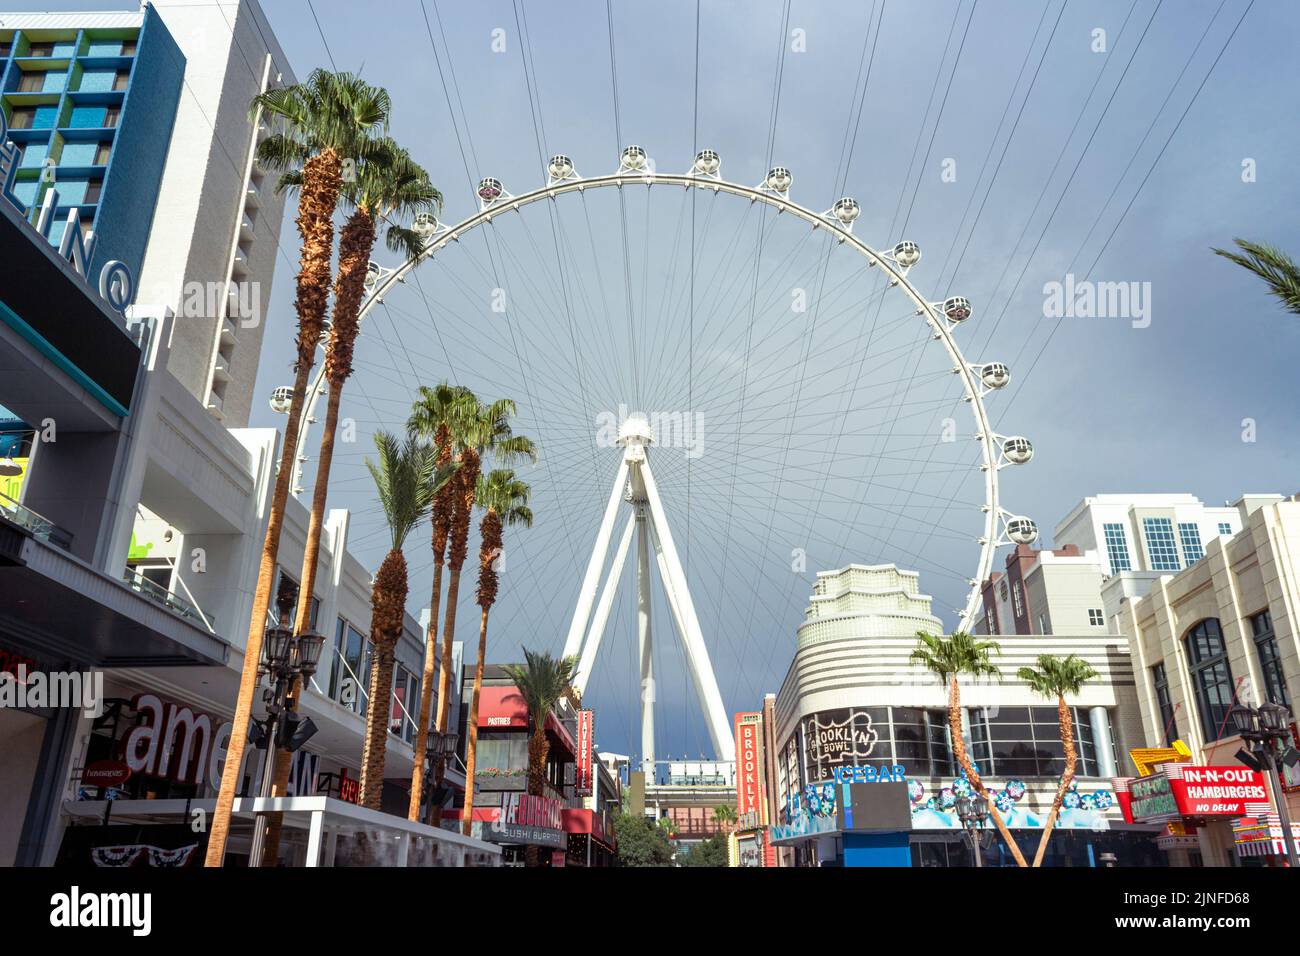 Genießen Sie die atemberaubende Aussicht auf das High Roller Observation Wheel an der LINQ Promenade in Las Vegas. Erleben Sie noch heute den Nervenkitzel dieser berühmten Attraktion! Stockfoto